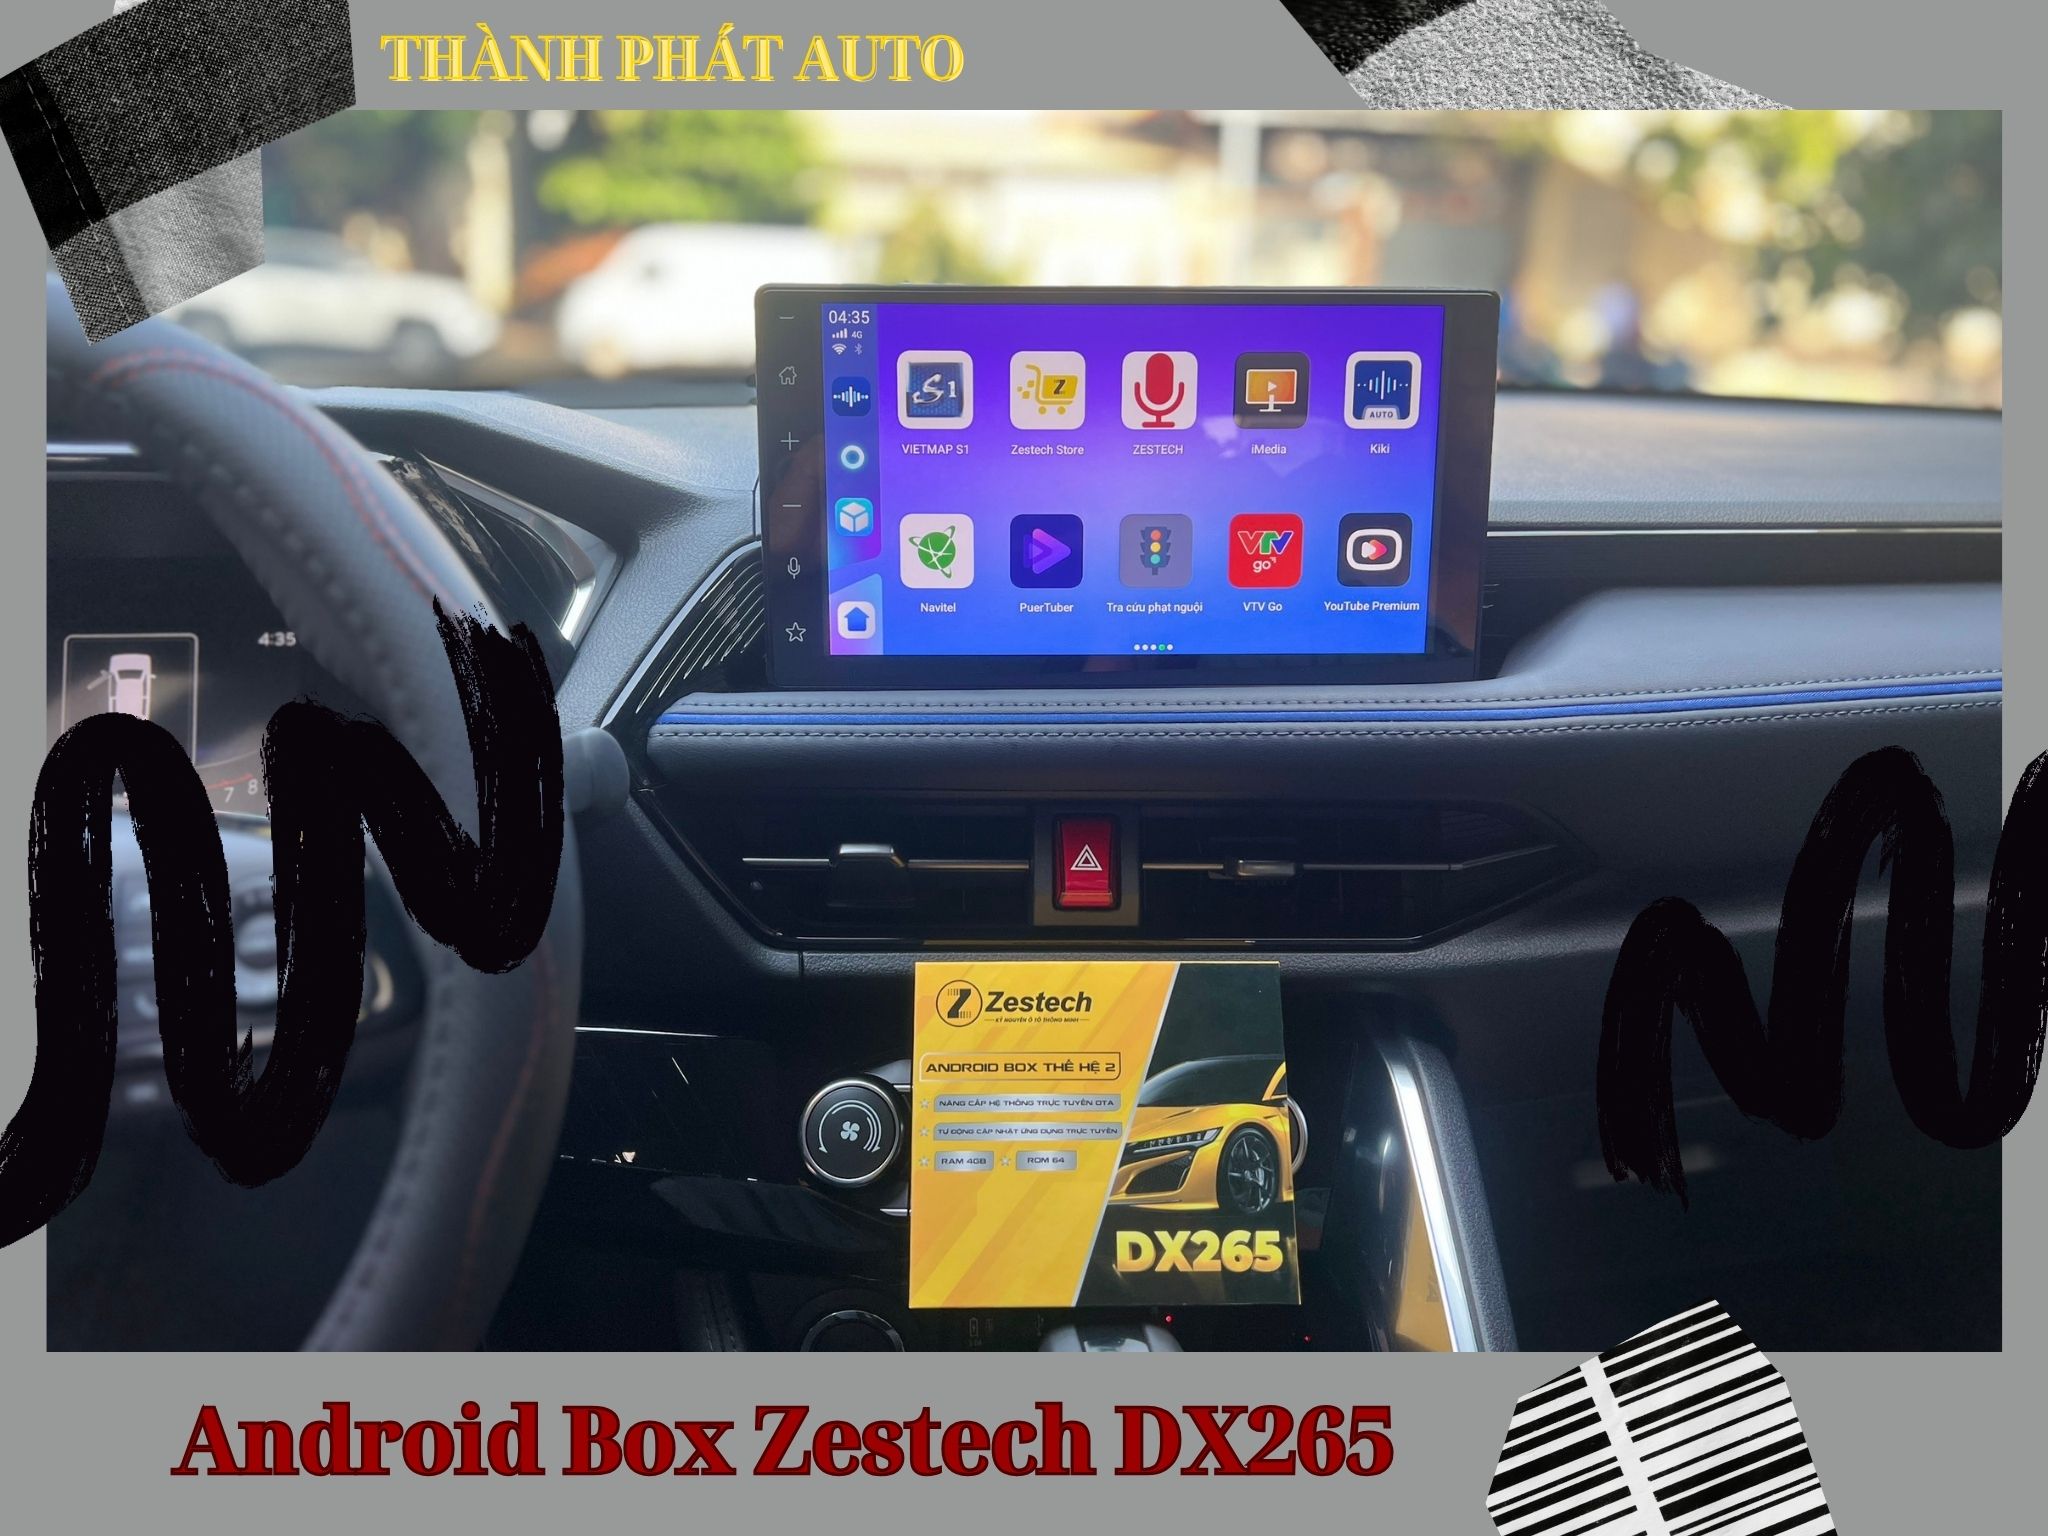 Android box cho ô tô là gì? Cách lắp đặt và sử dụng Android Auto Box